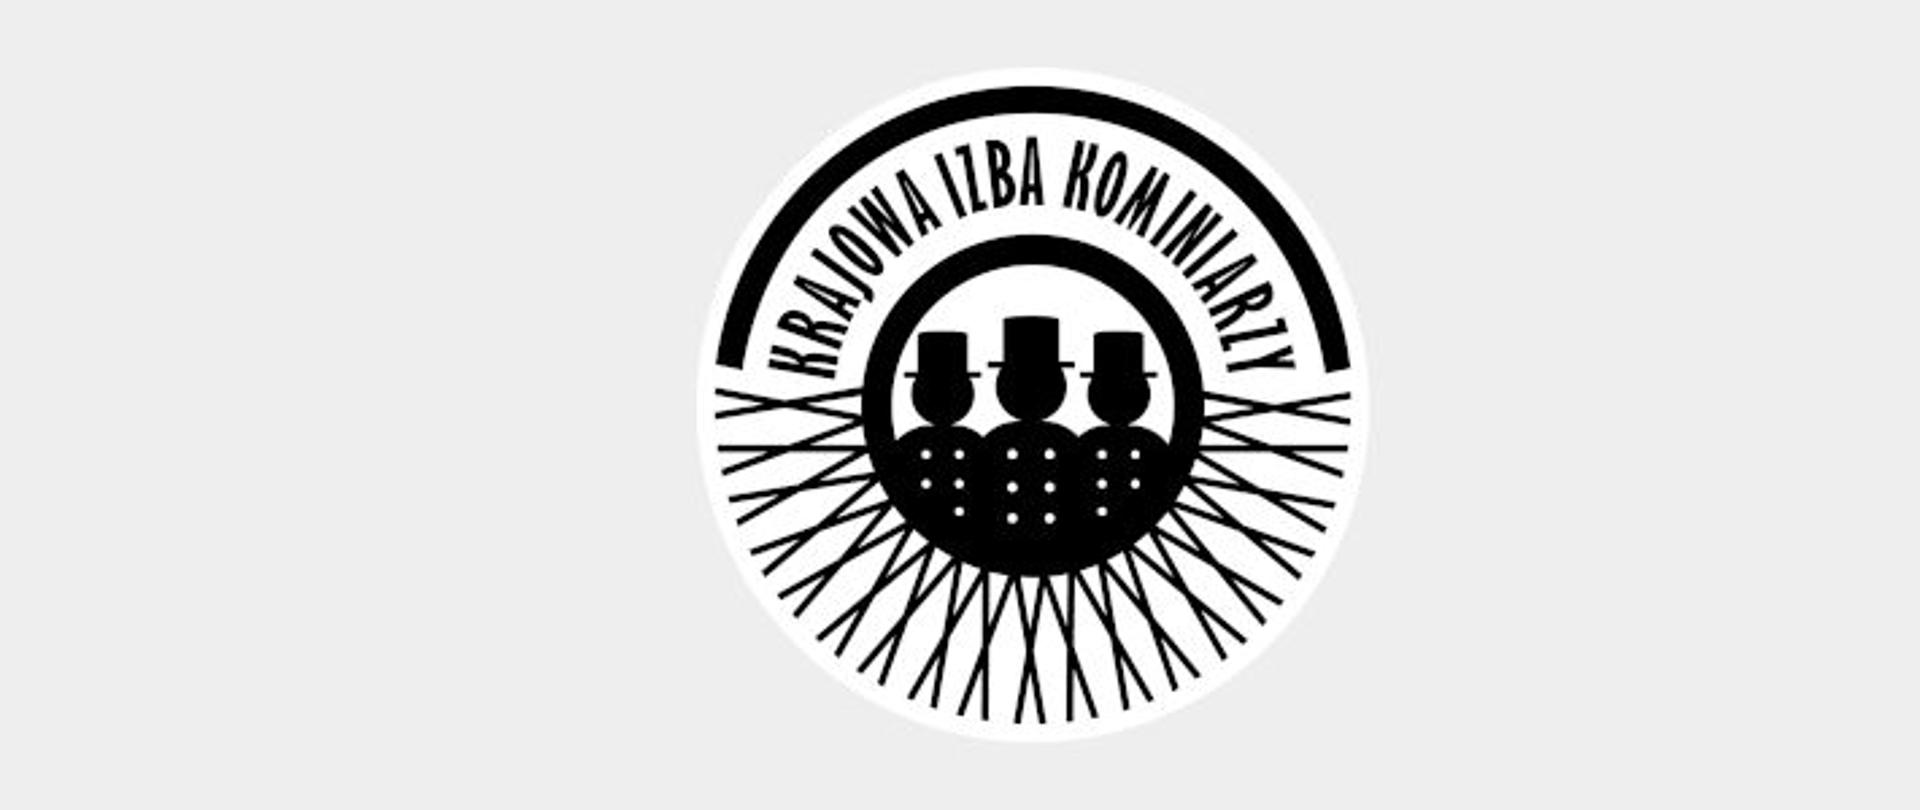 Czarny logotyp na białym tle przedstawiający kominiarzy i napis "Krajowa Izba Kominiarzy"